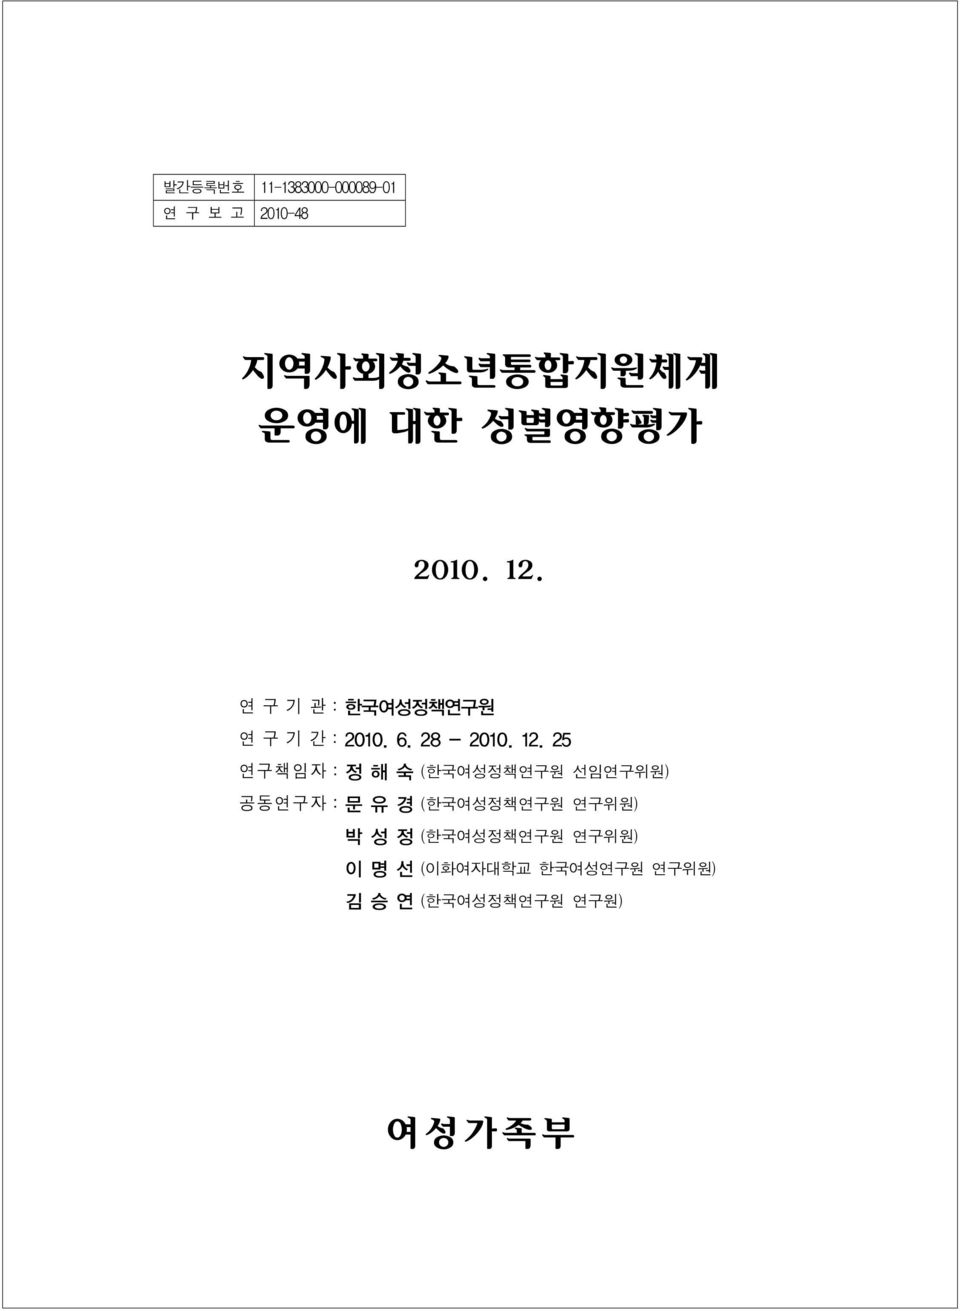 연구기관:한국여성정책연구원 연구기간:2010. 6. 28-2010. 12.